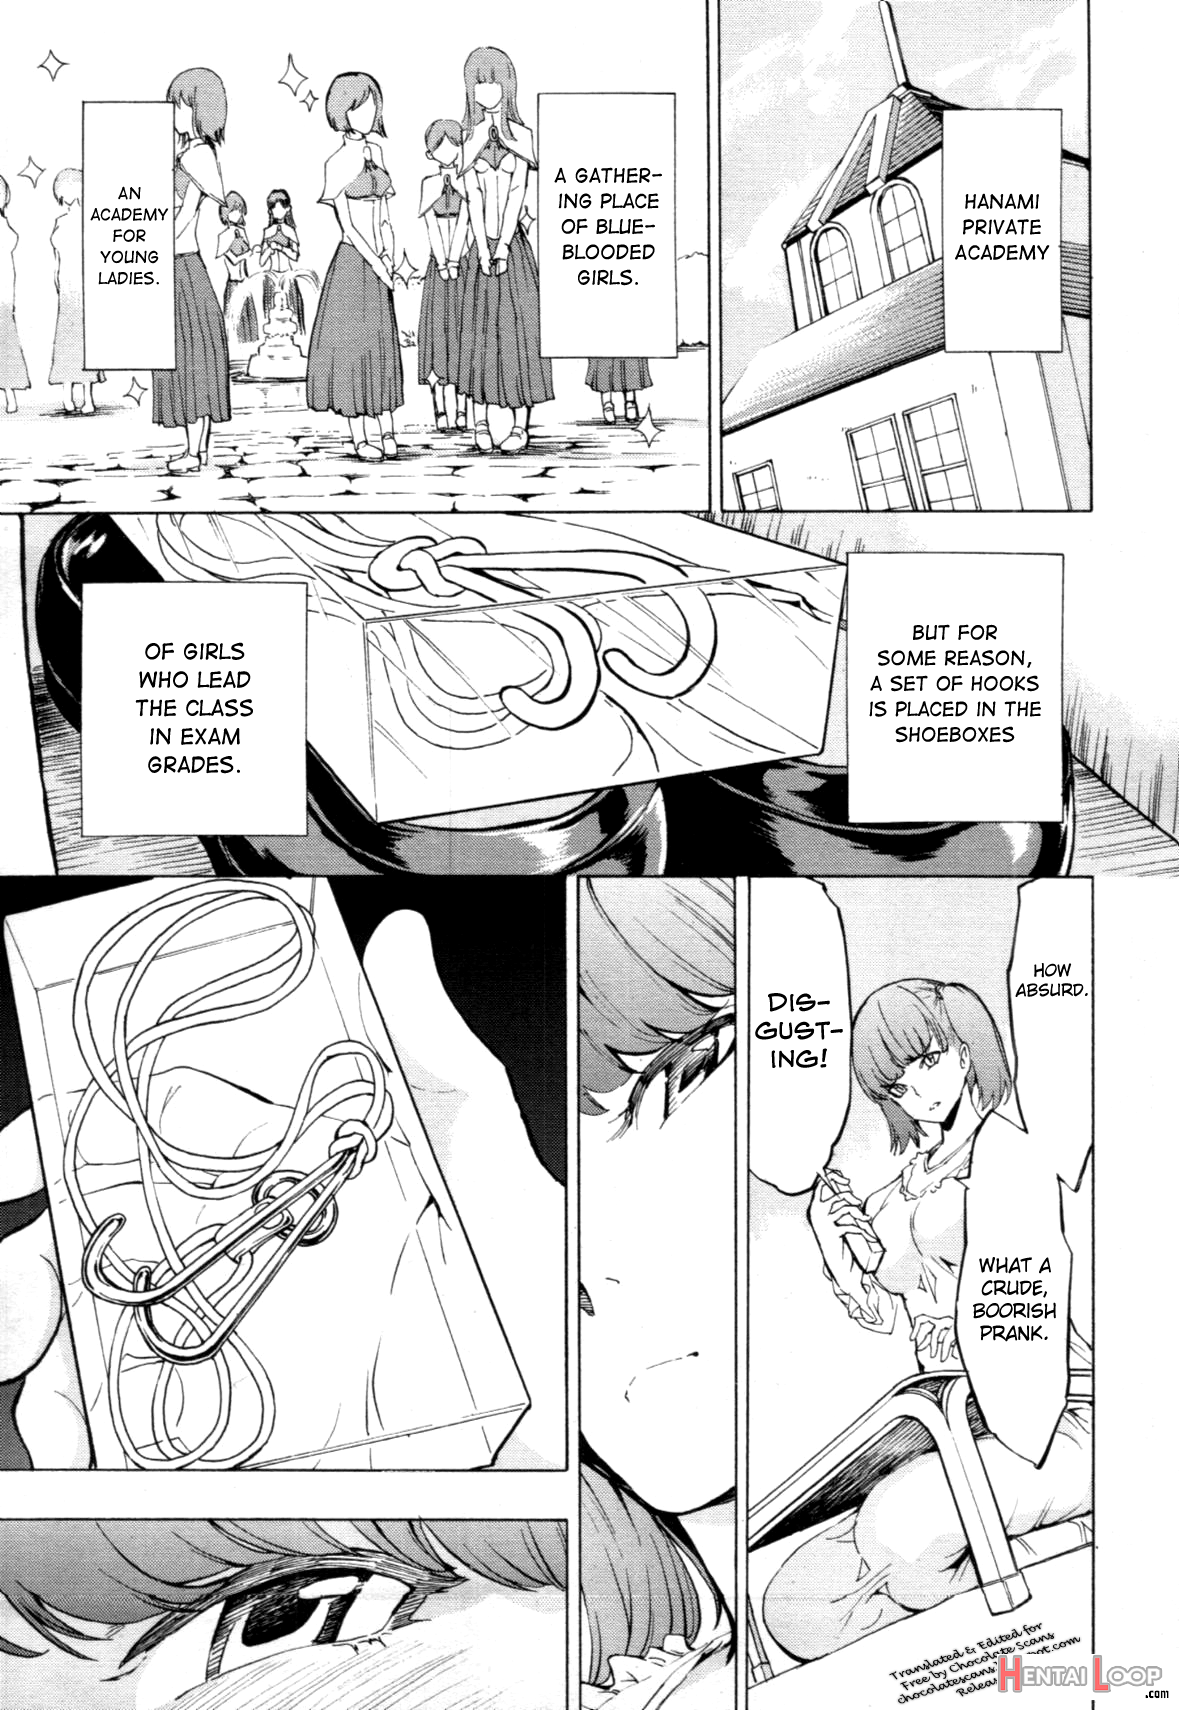 Himitsu No Hana En page 3